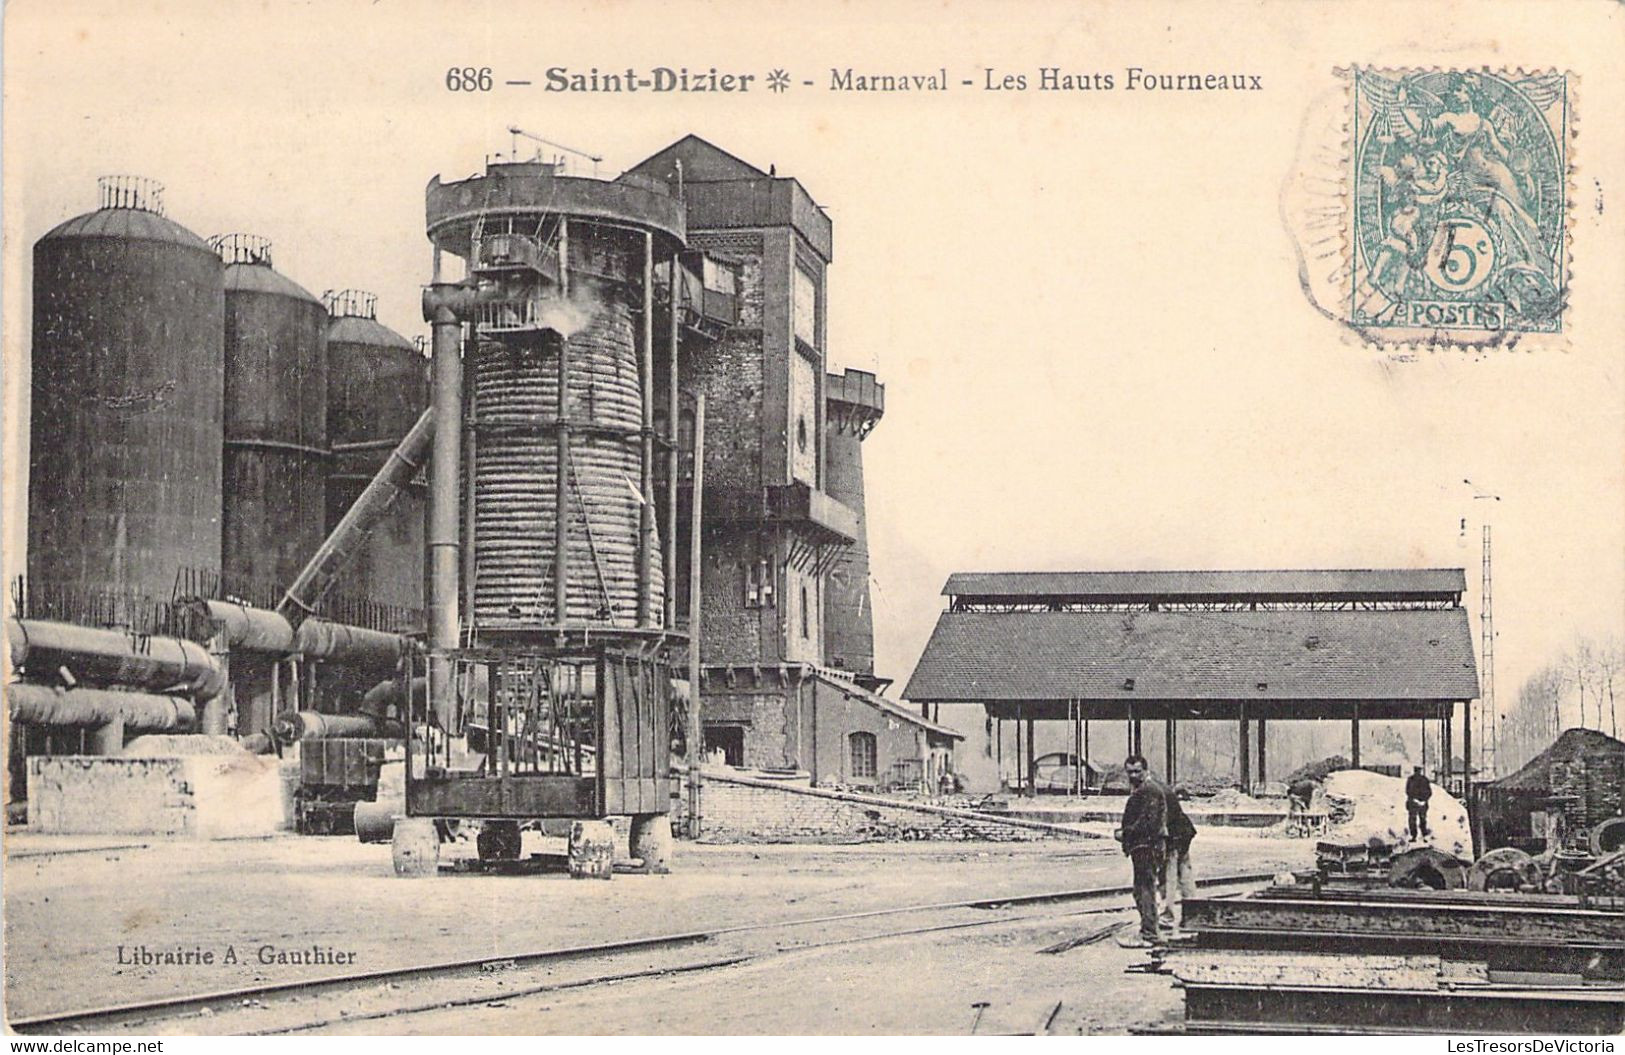 CPA FRANCE - 52 - SAINT DIZIER - MARNAVAL - Les Hauts Fourneaux - 686 - Lib Gauthier - Saint Dizier